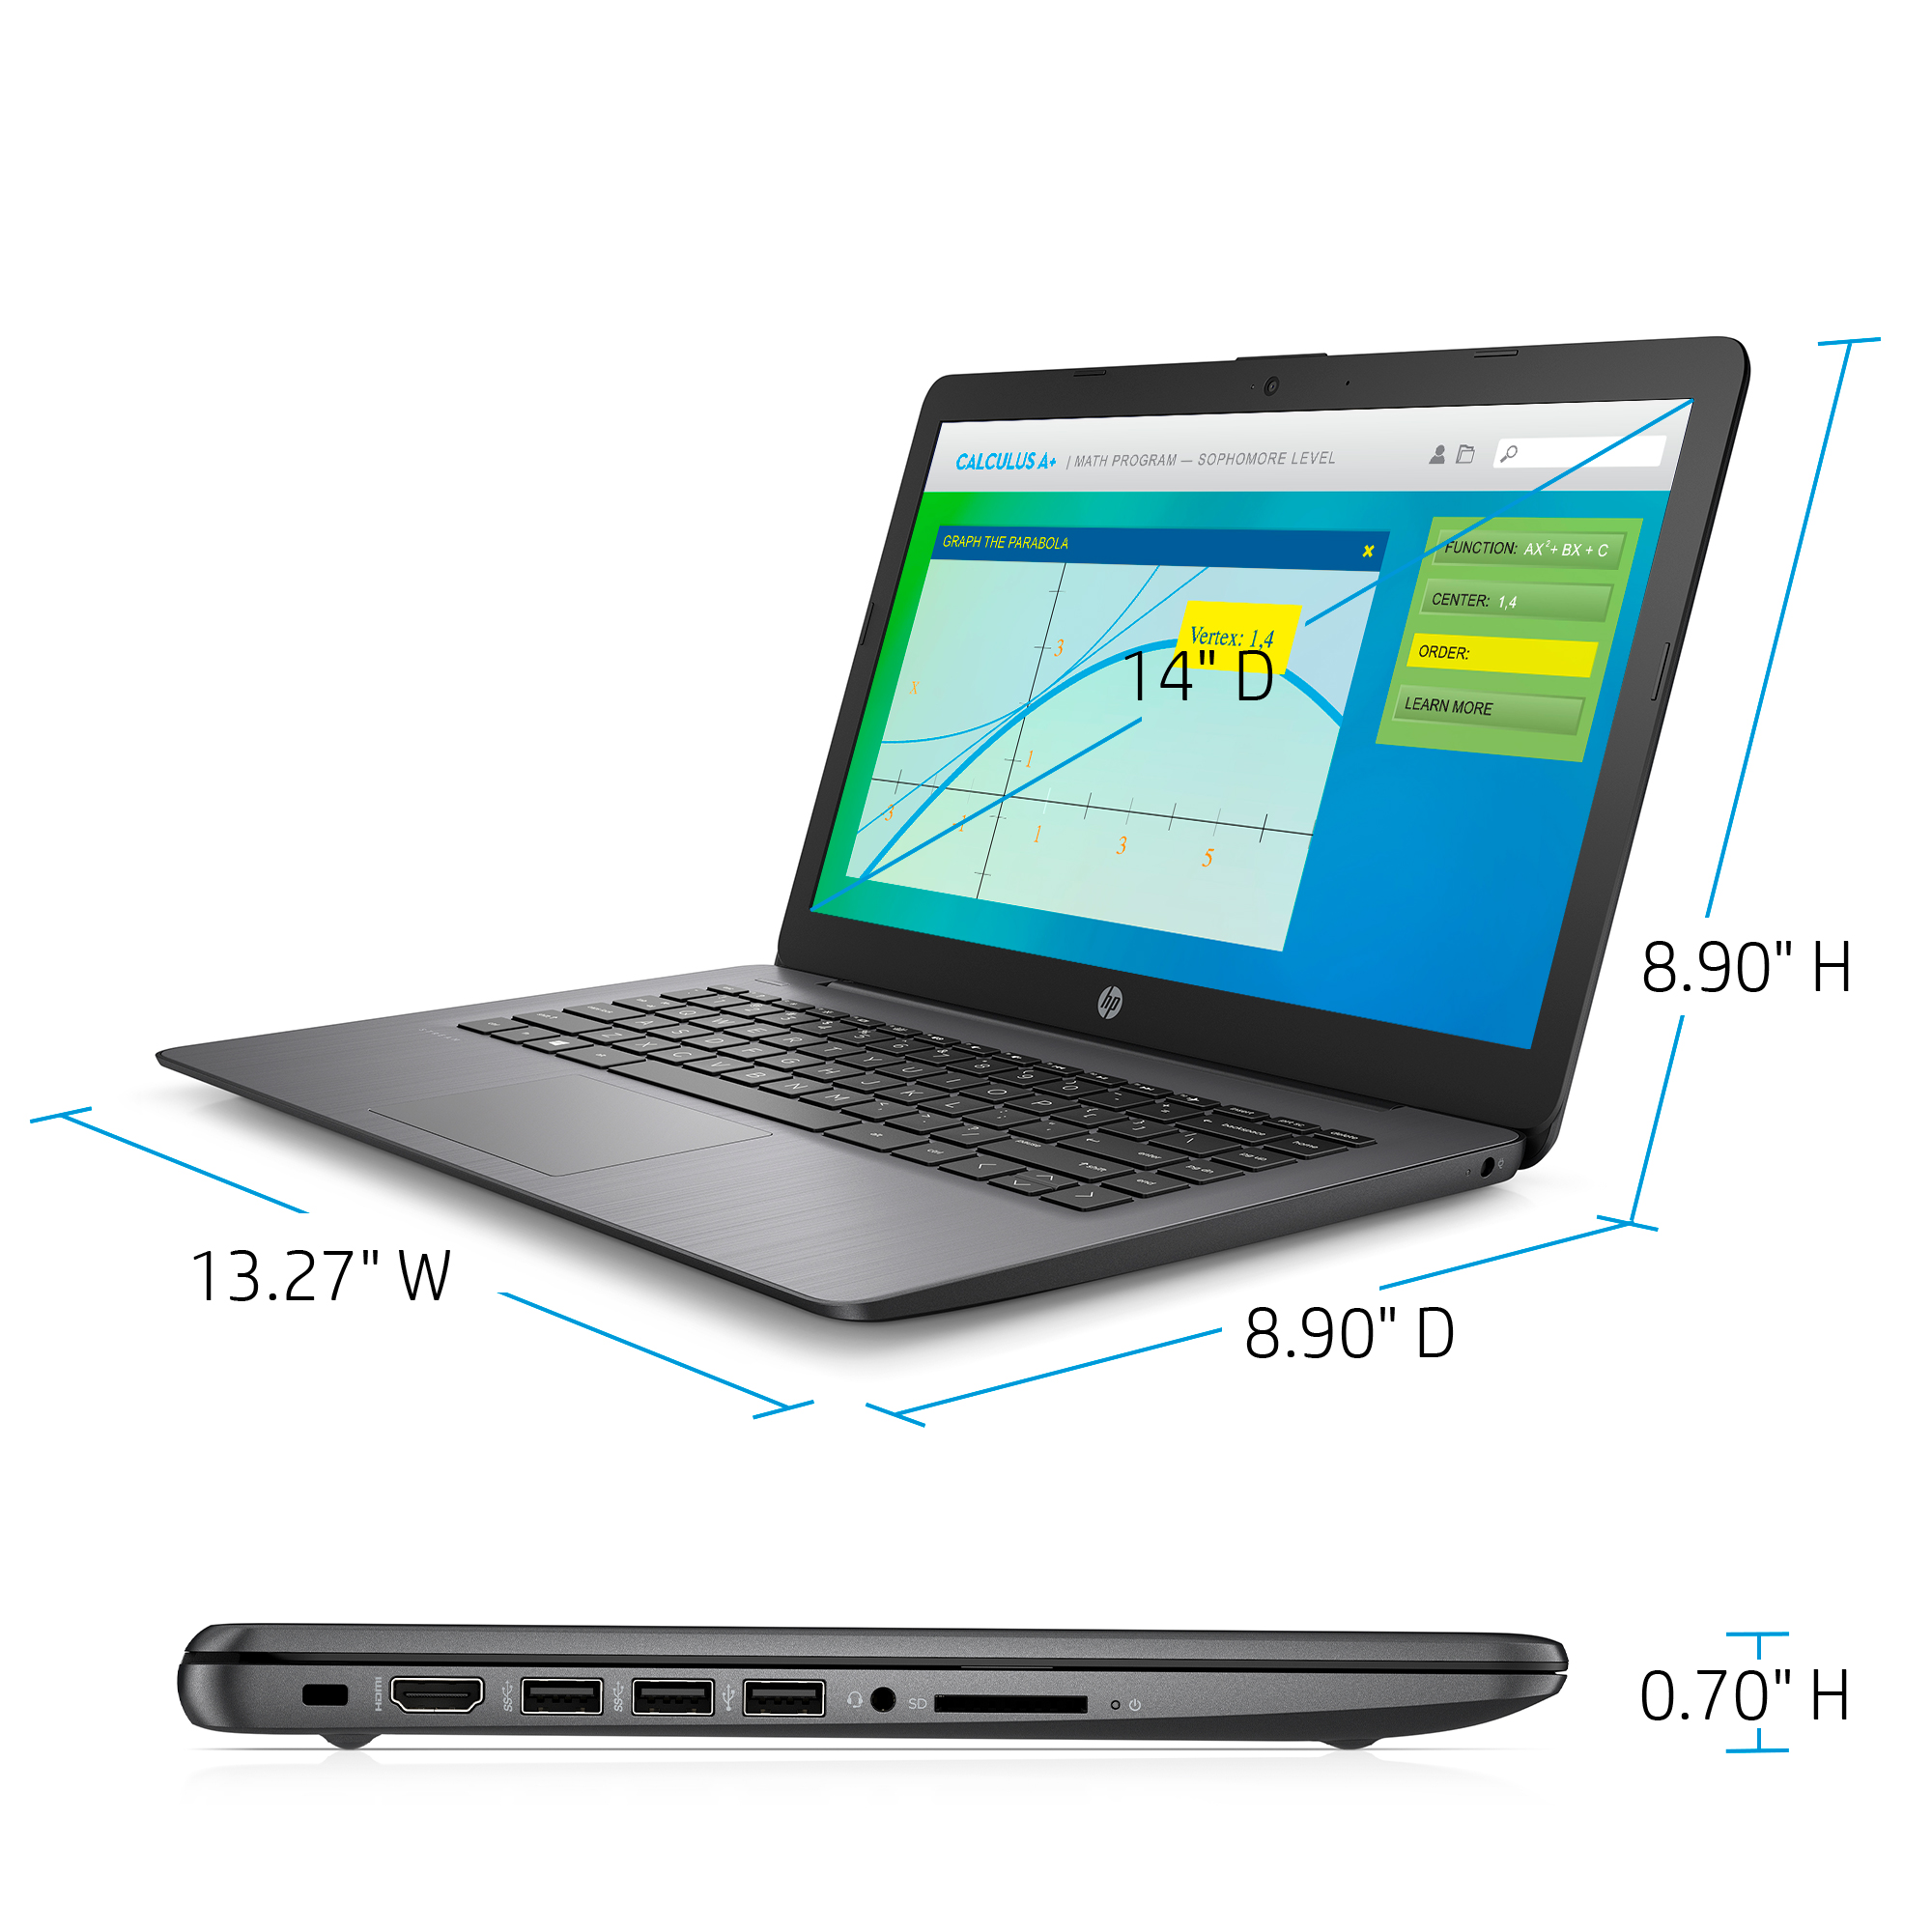 HP Stream 14" Celeron 4GB/64GB Laptop-Brilliant Black - image 2 of 10